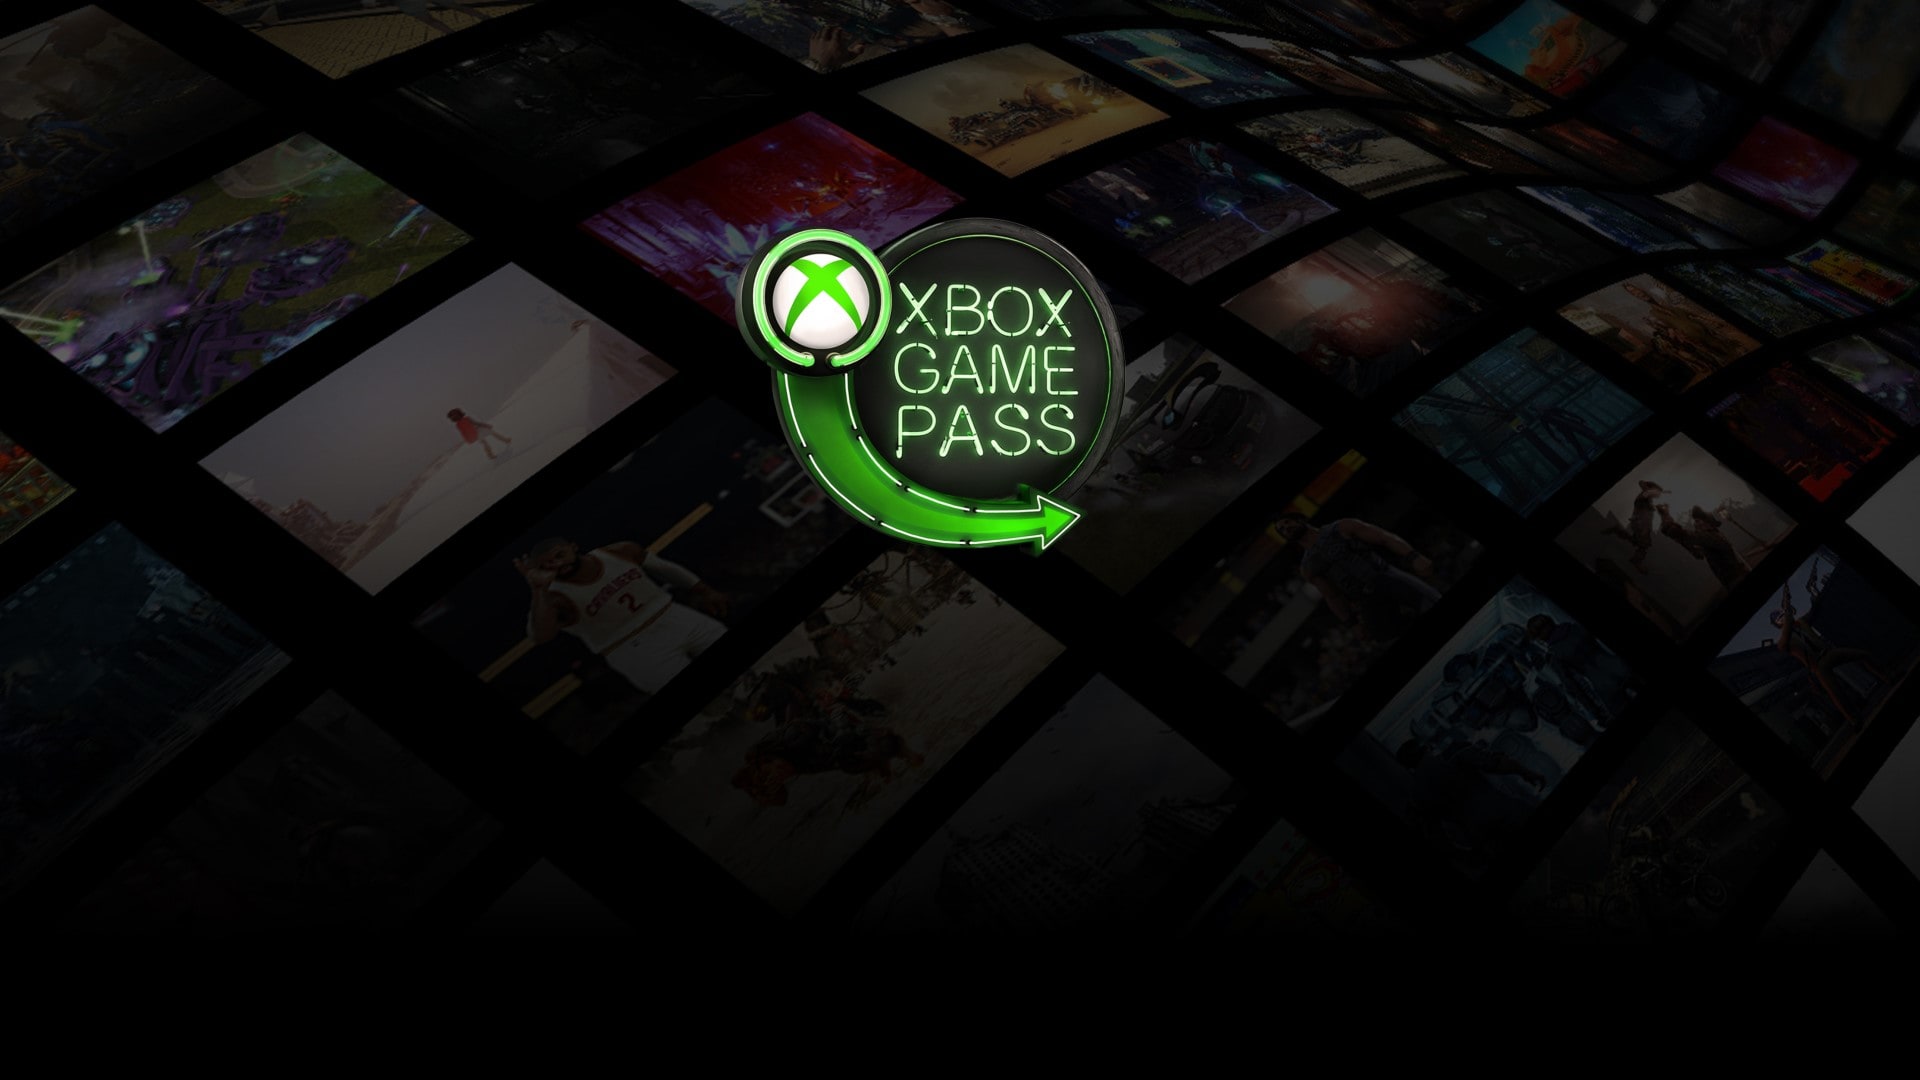 นักวิเคราะห์เผย! Xbox Game Pass ถือครองส่วนแบ่งทางการตลาด 60% ของการให้บริการเกมในระบบสมาชิก